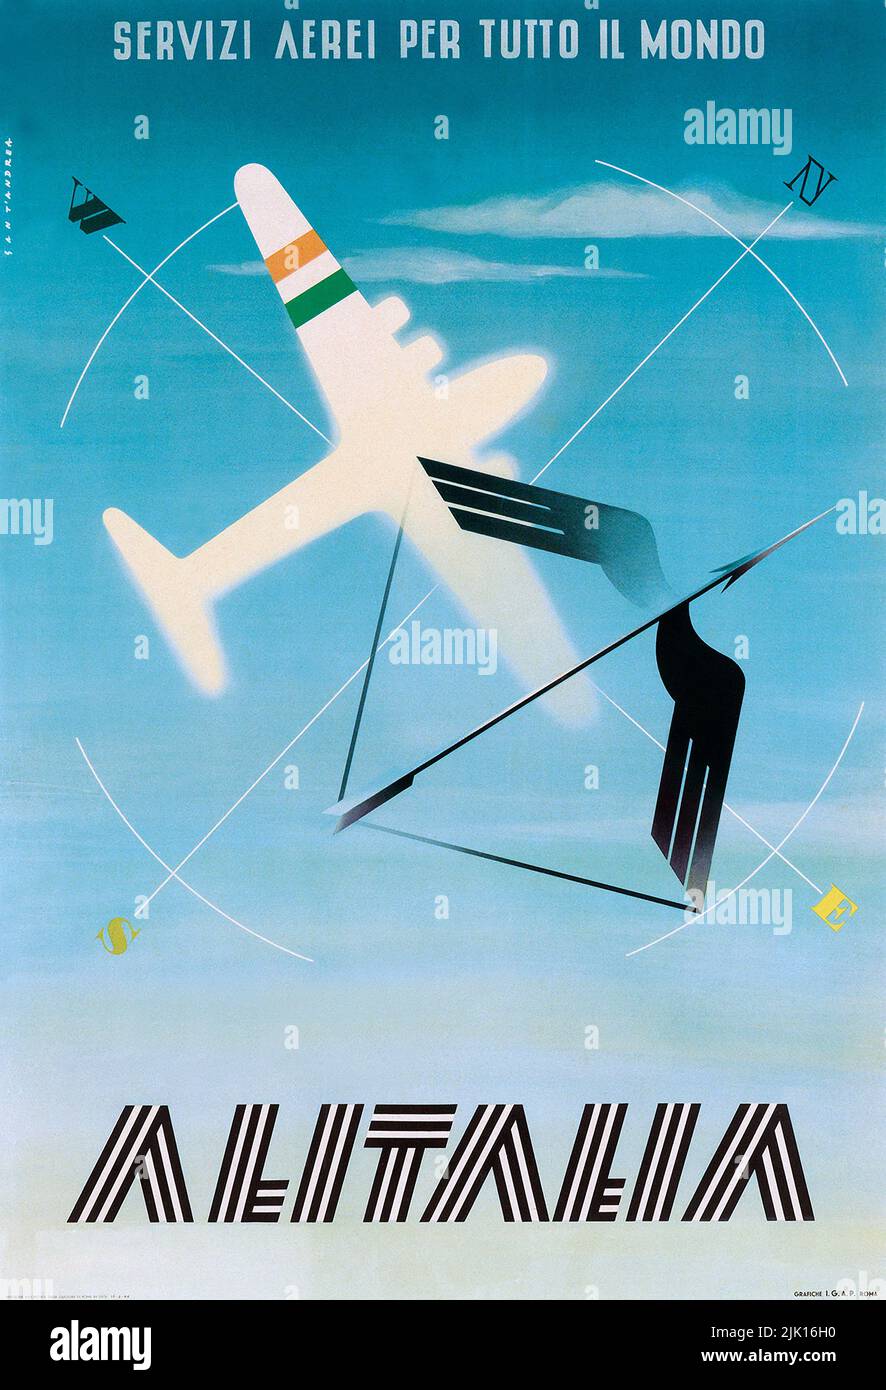 Vintage 1940s Airline Poster - ALITALIA / SERVIZI AEREI PER TUTTO IL MONDO. 1948. Stockfoto